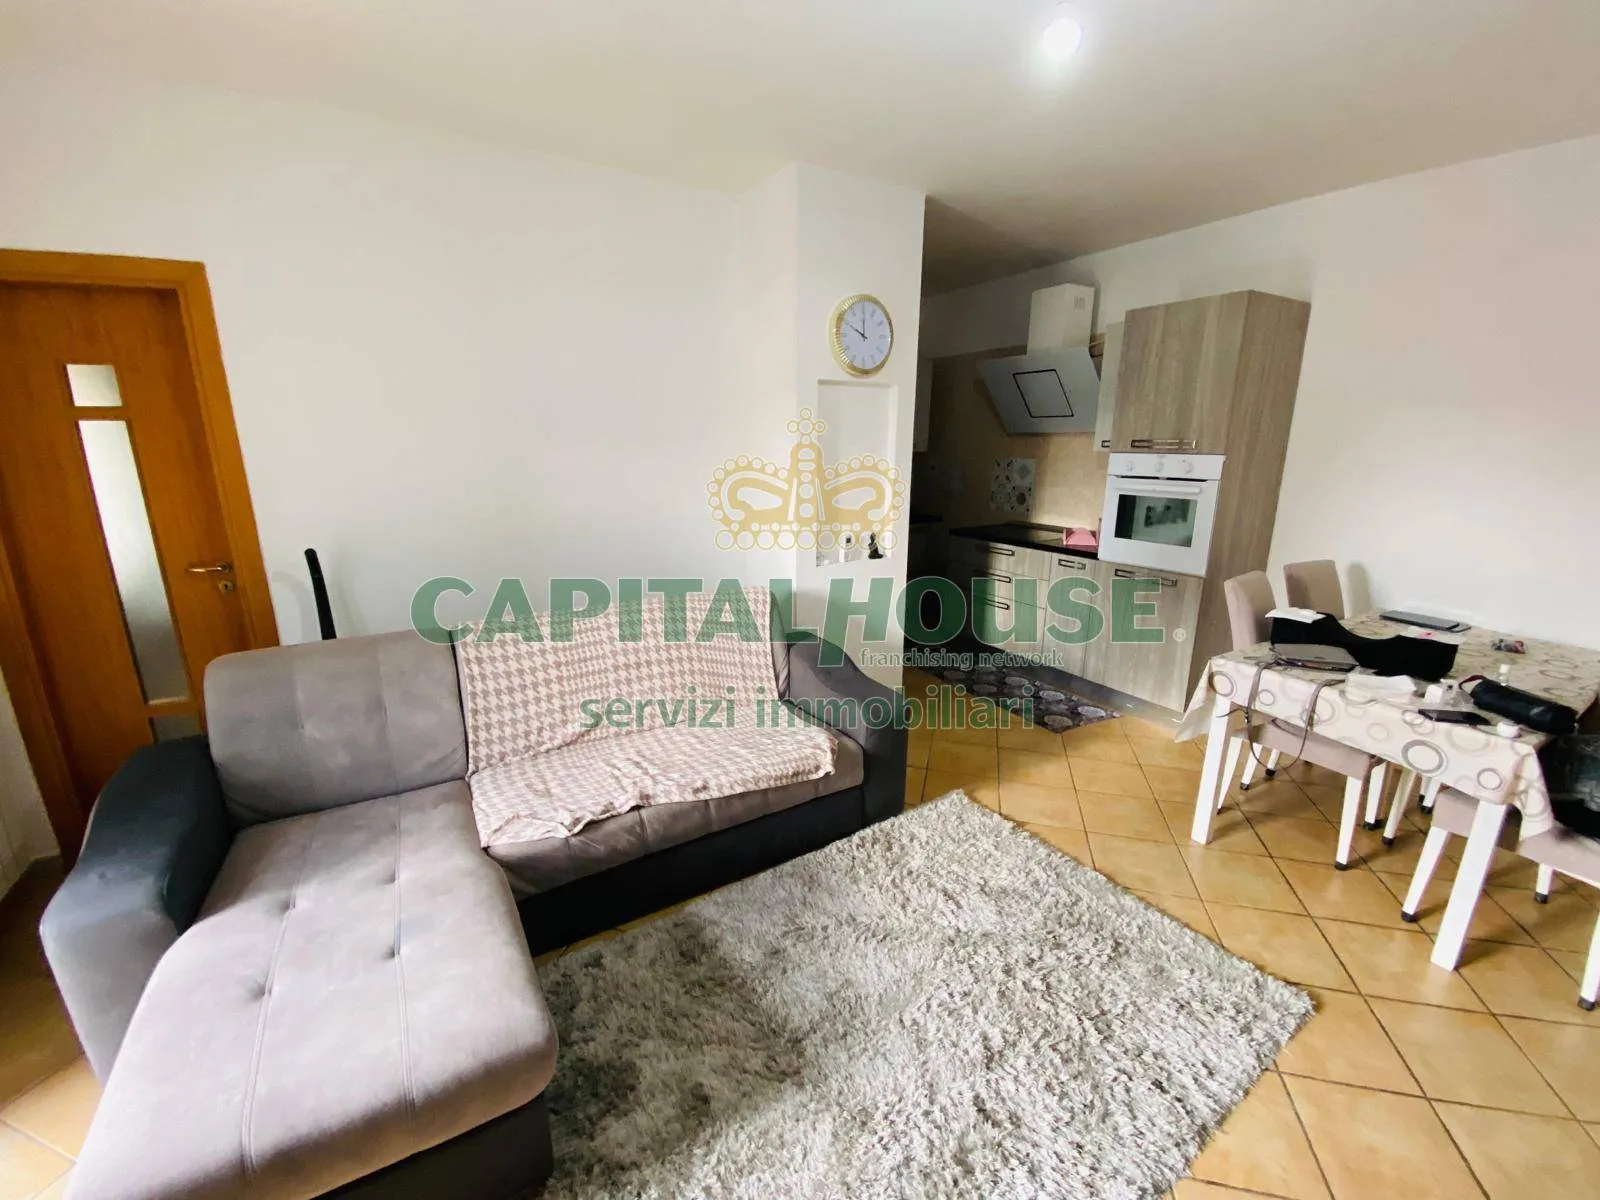 Immagine per Appartamento in vendita a San Vitaliano